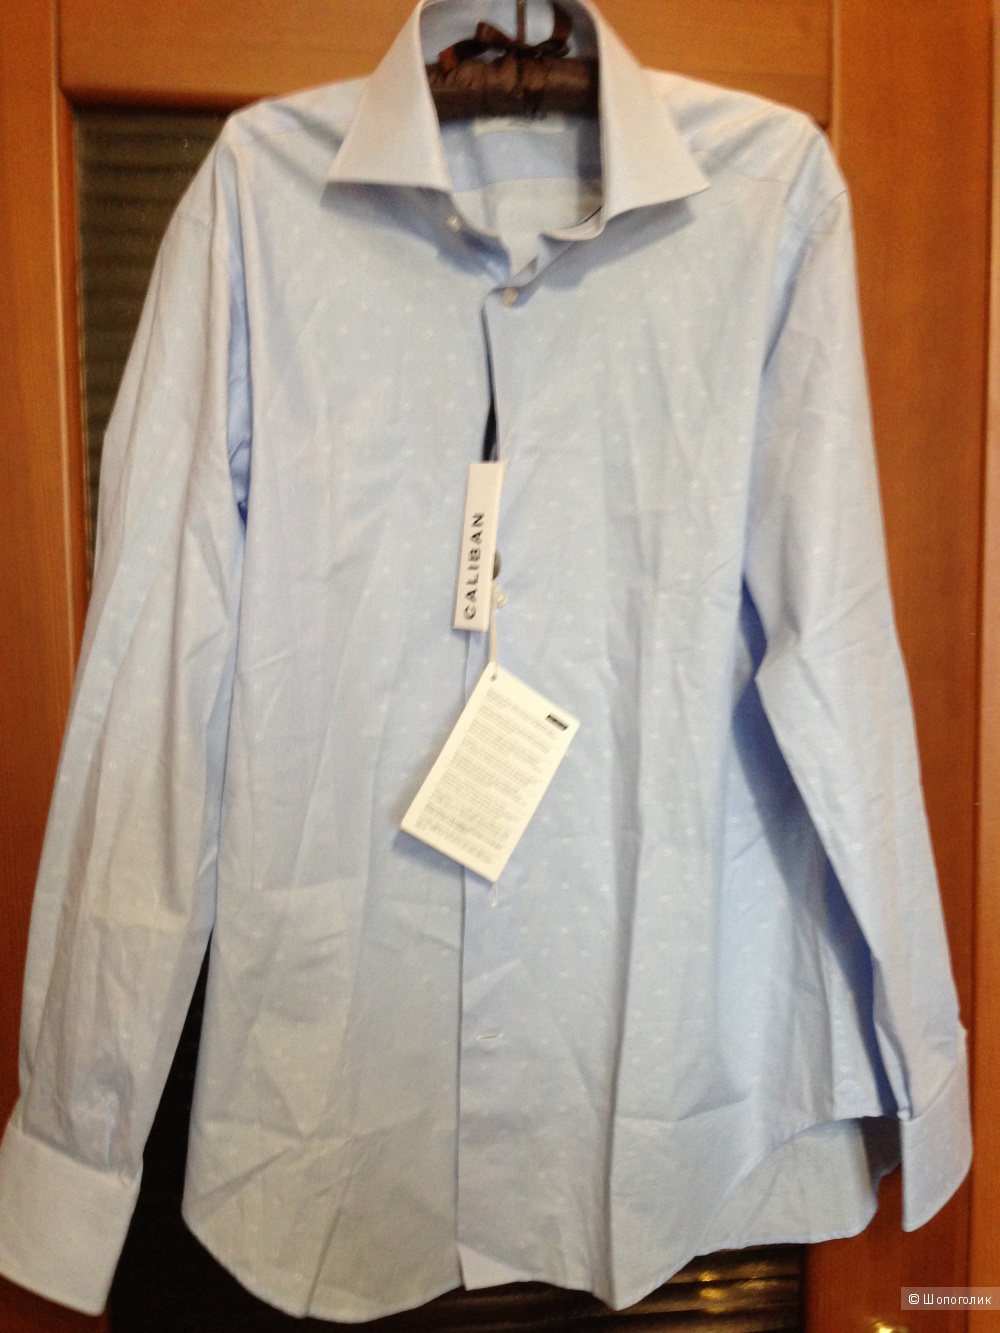 Мужская рубашка CALIBAN, 48 (Российский размер) дизайнер:IV (IT) Небесно-голубой. Большемерит.